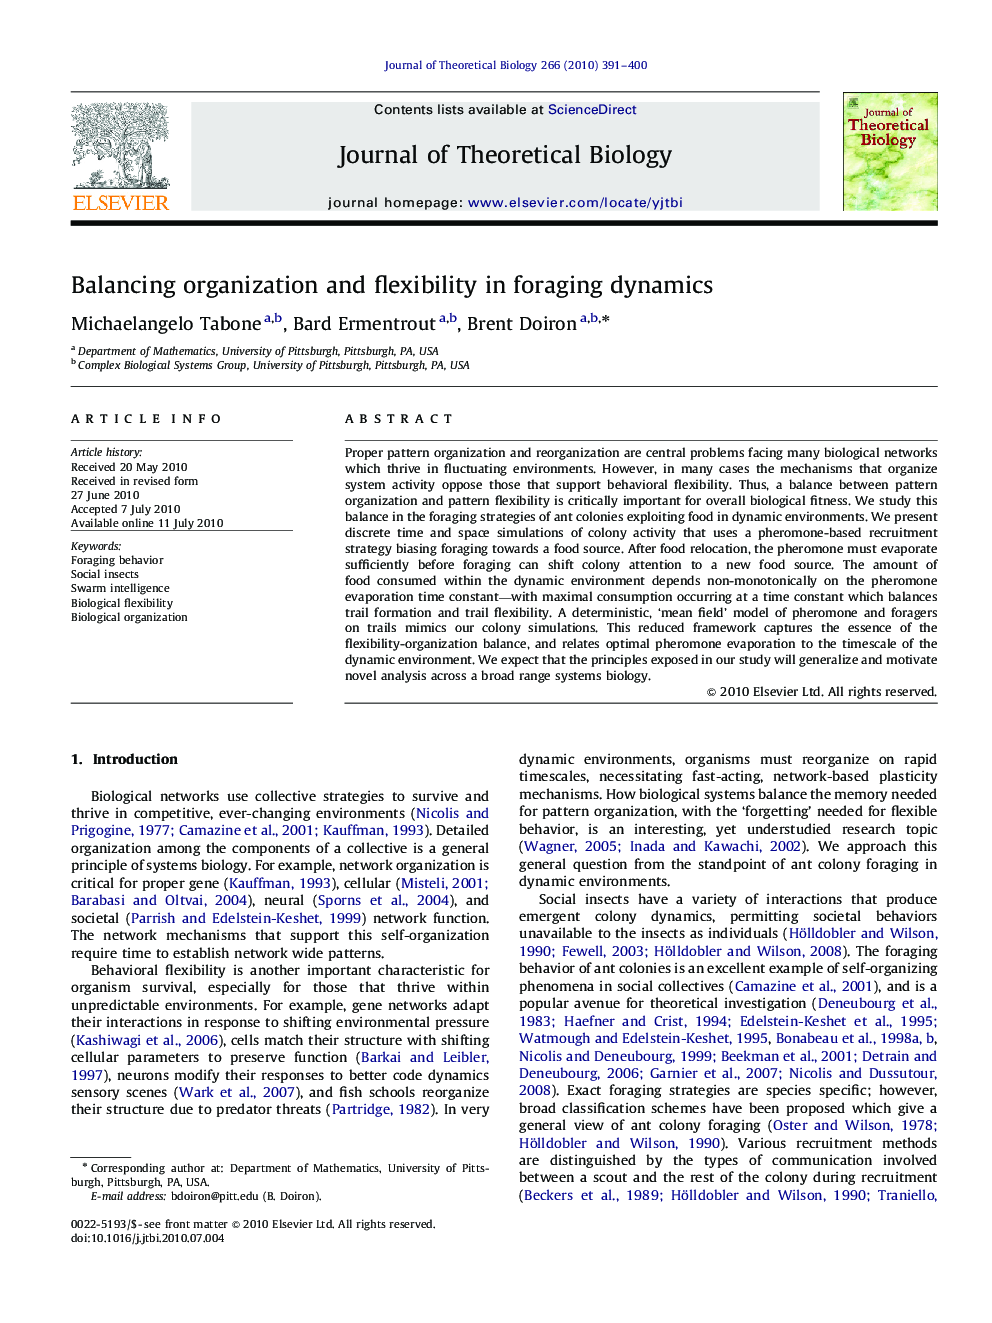 Balancing organization and flexibility in foraging dynamics